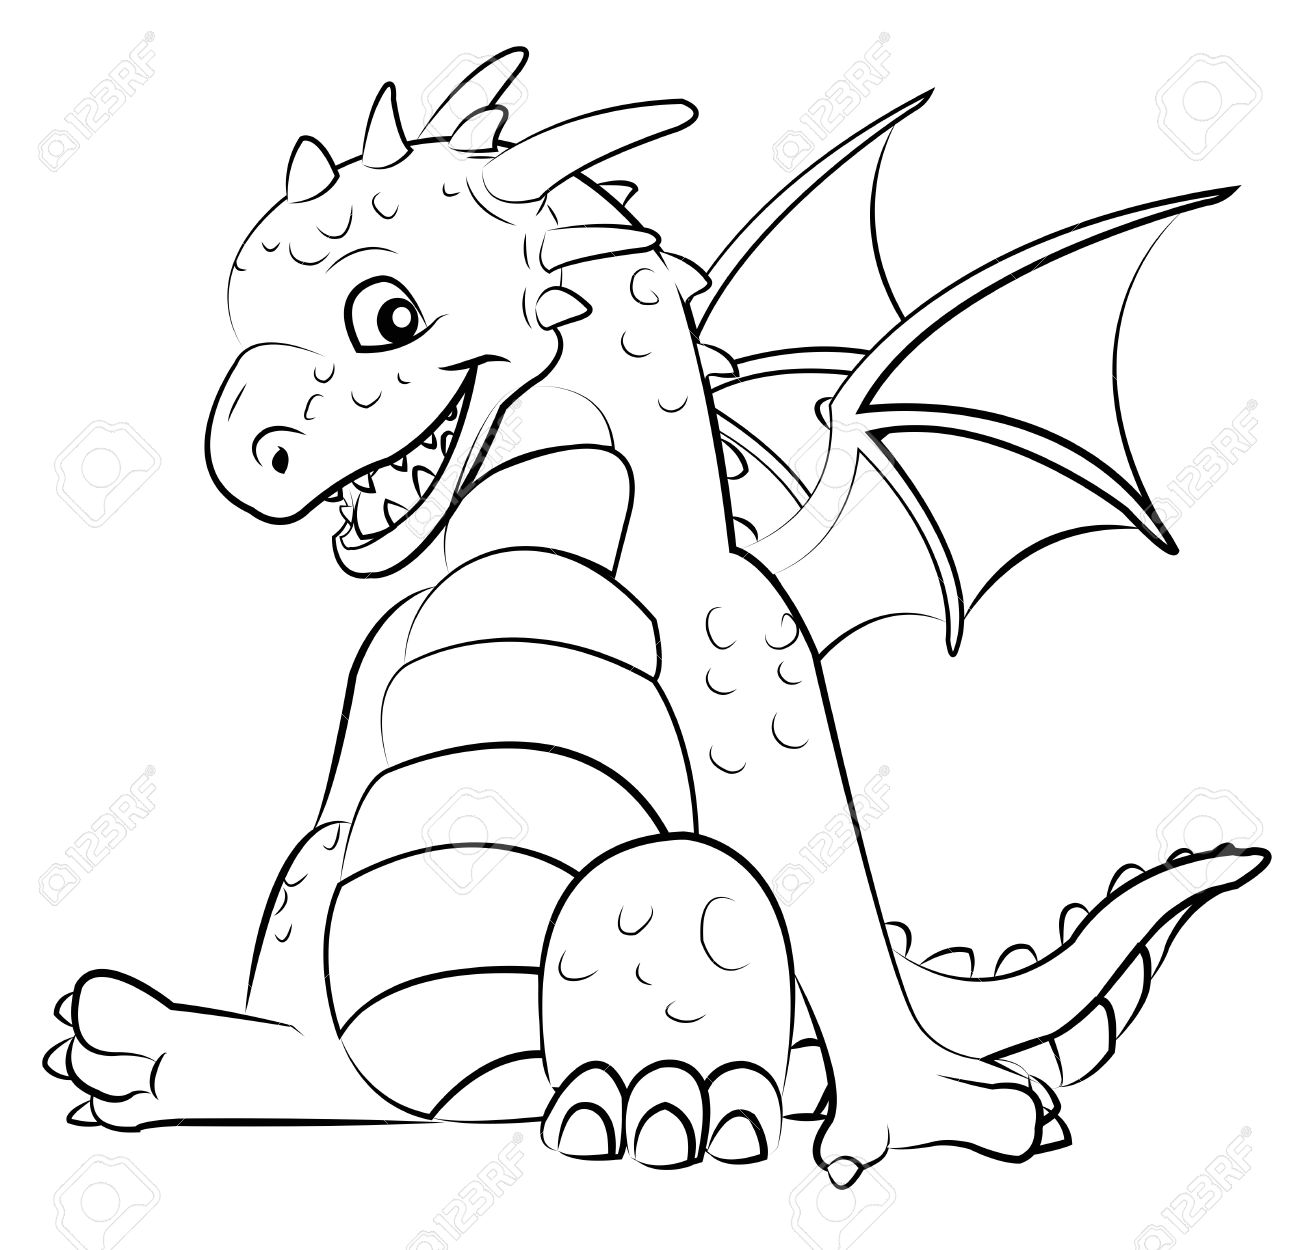 Adorable dragon coloring book